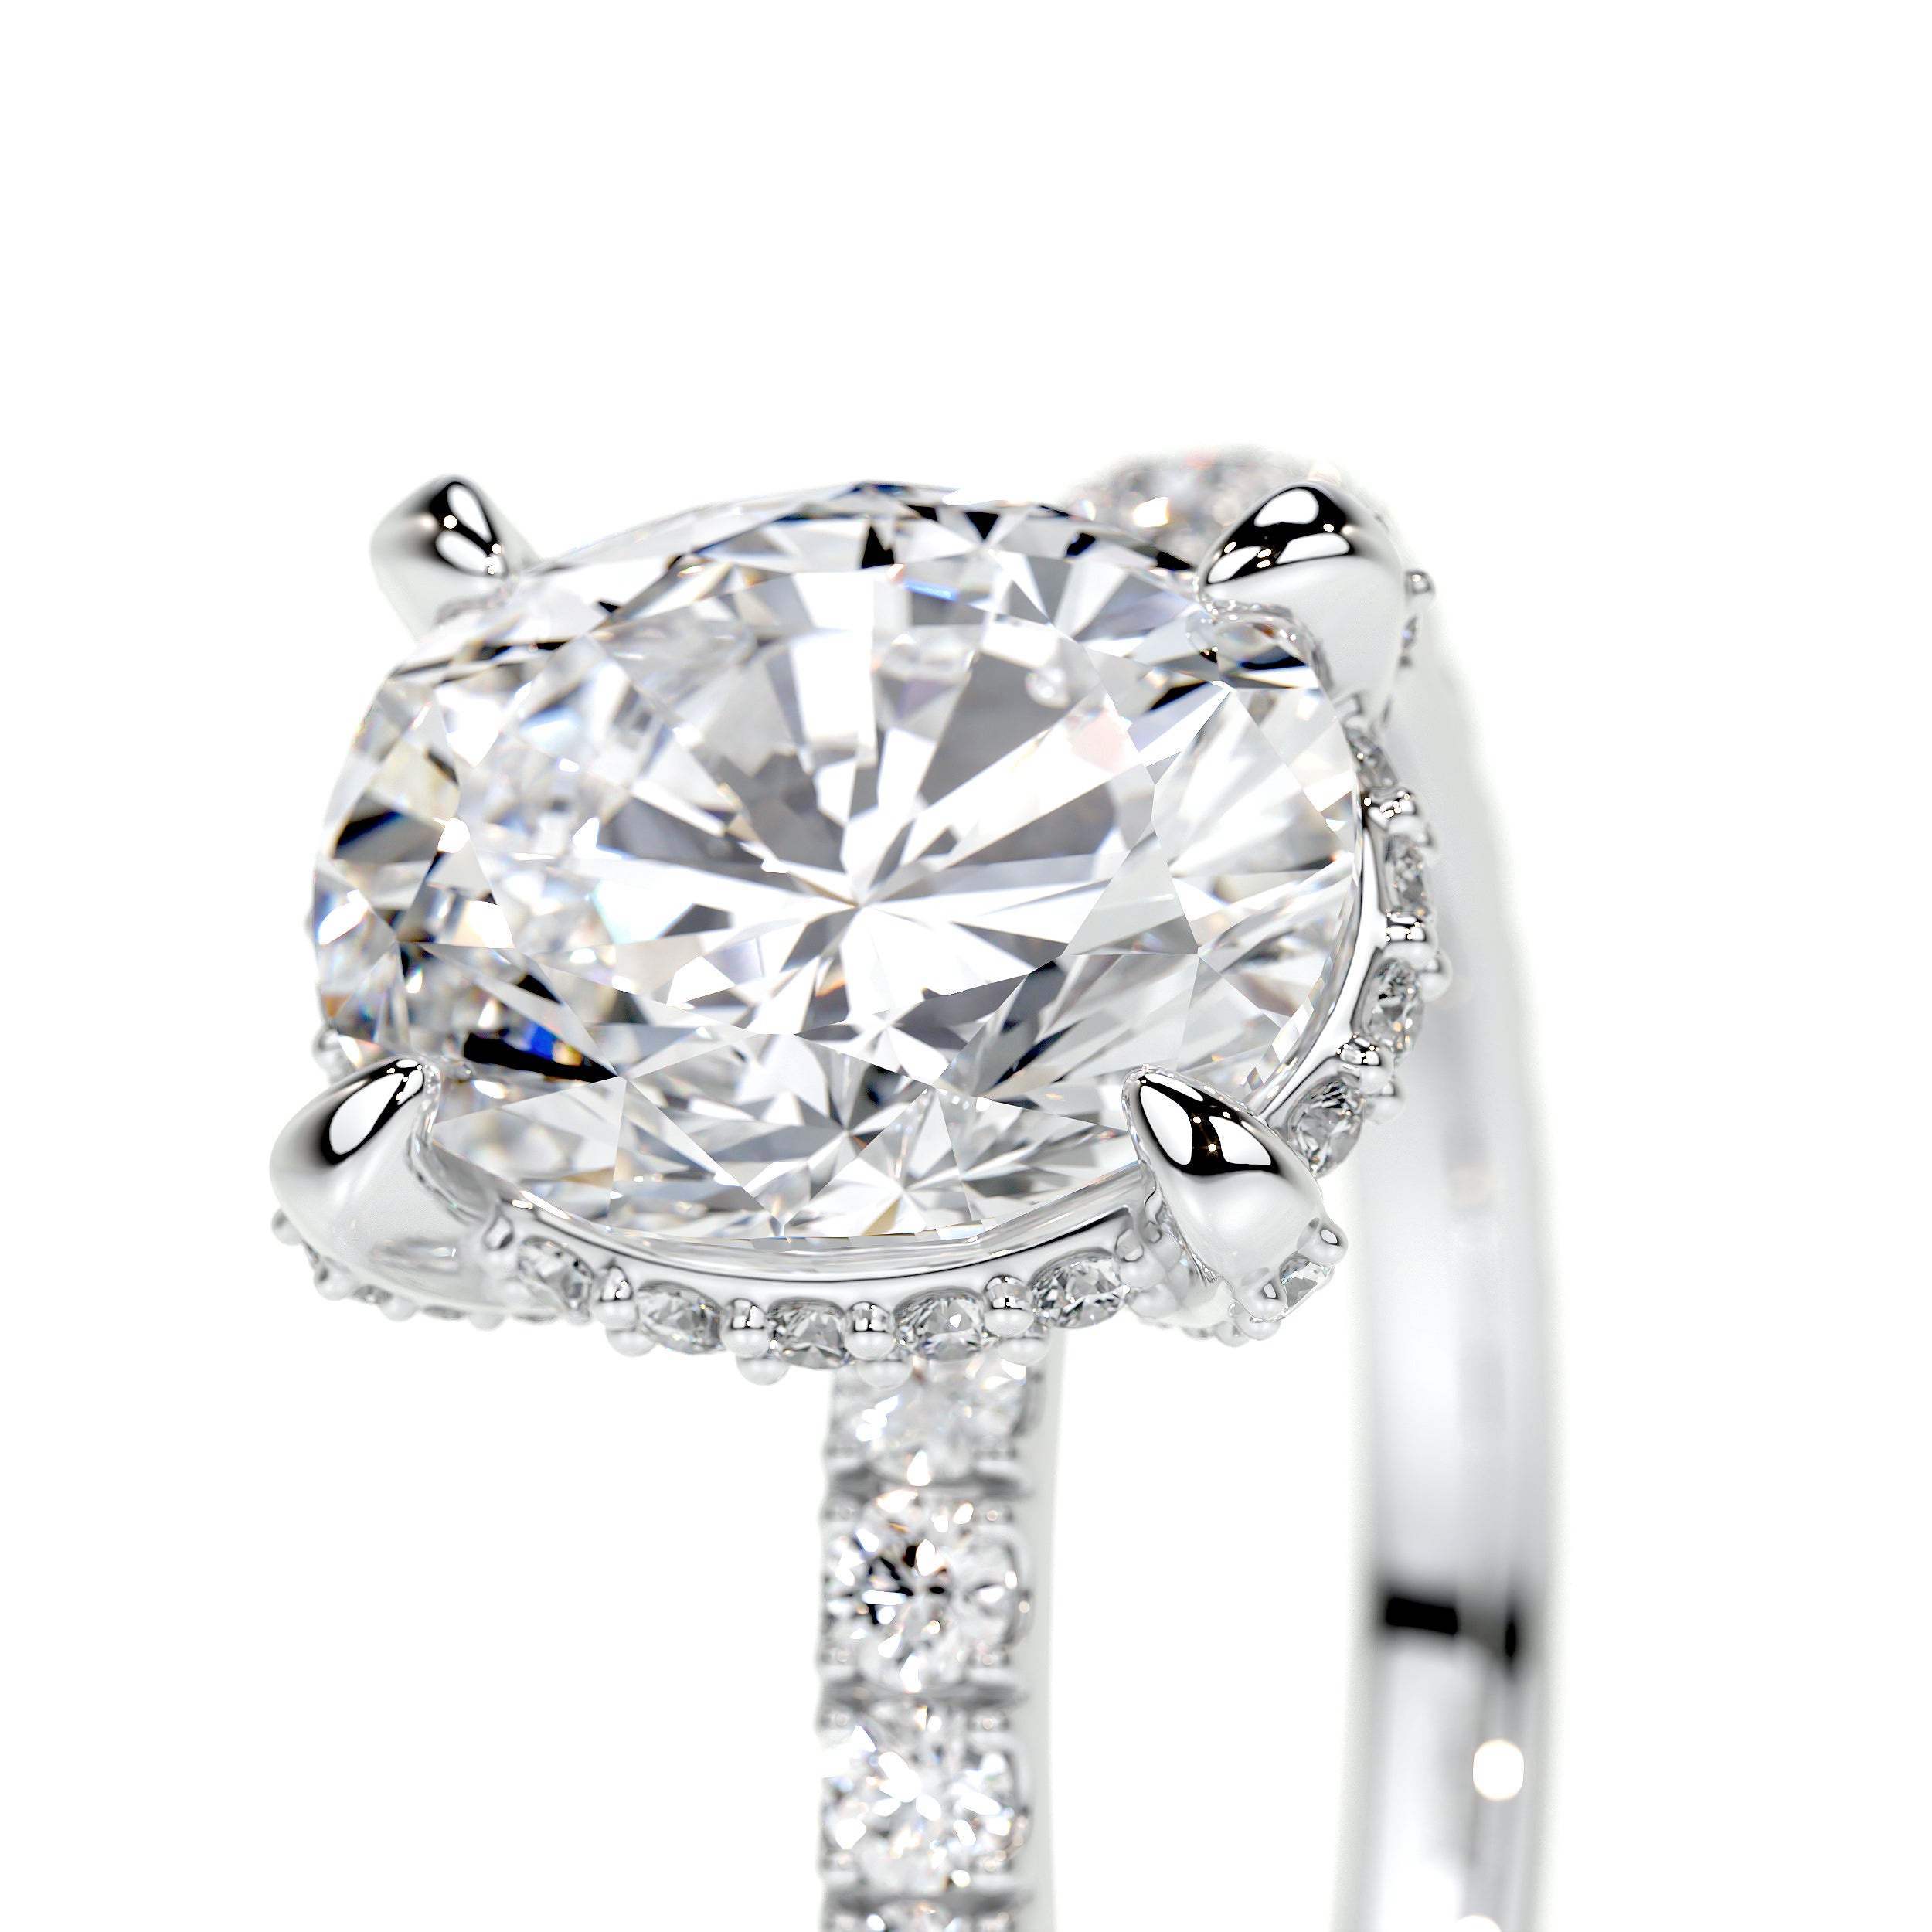 Alicia Lab Grown Diamond Ring   (2.50 Carat) -14K White Gold